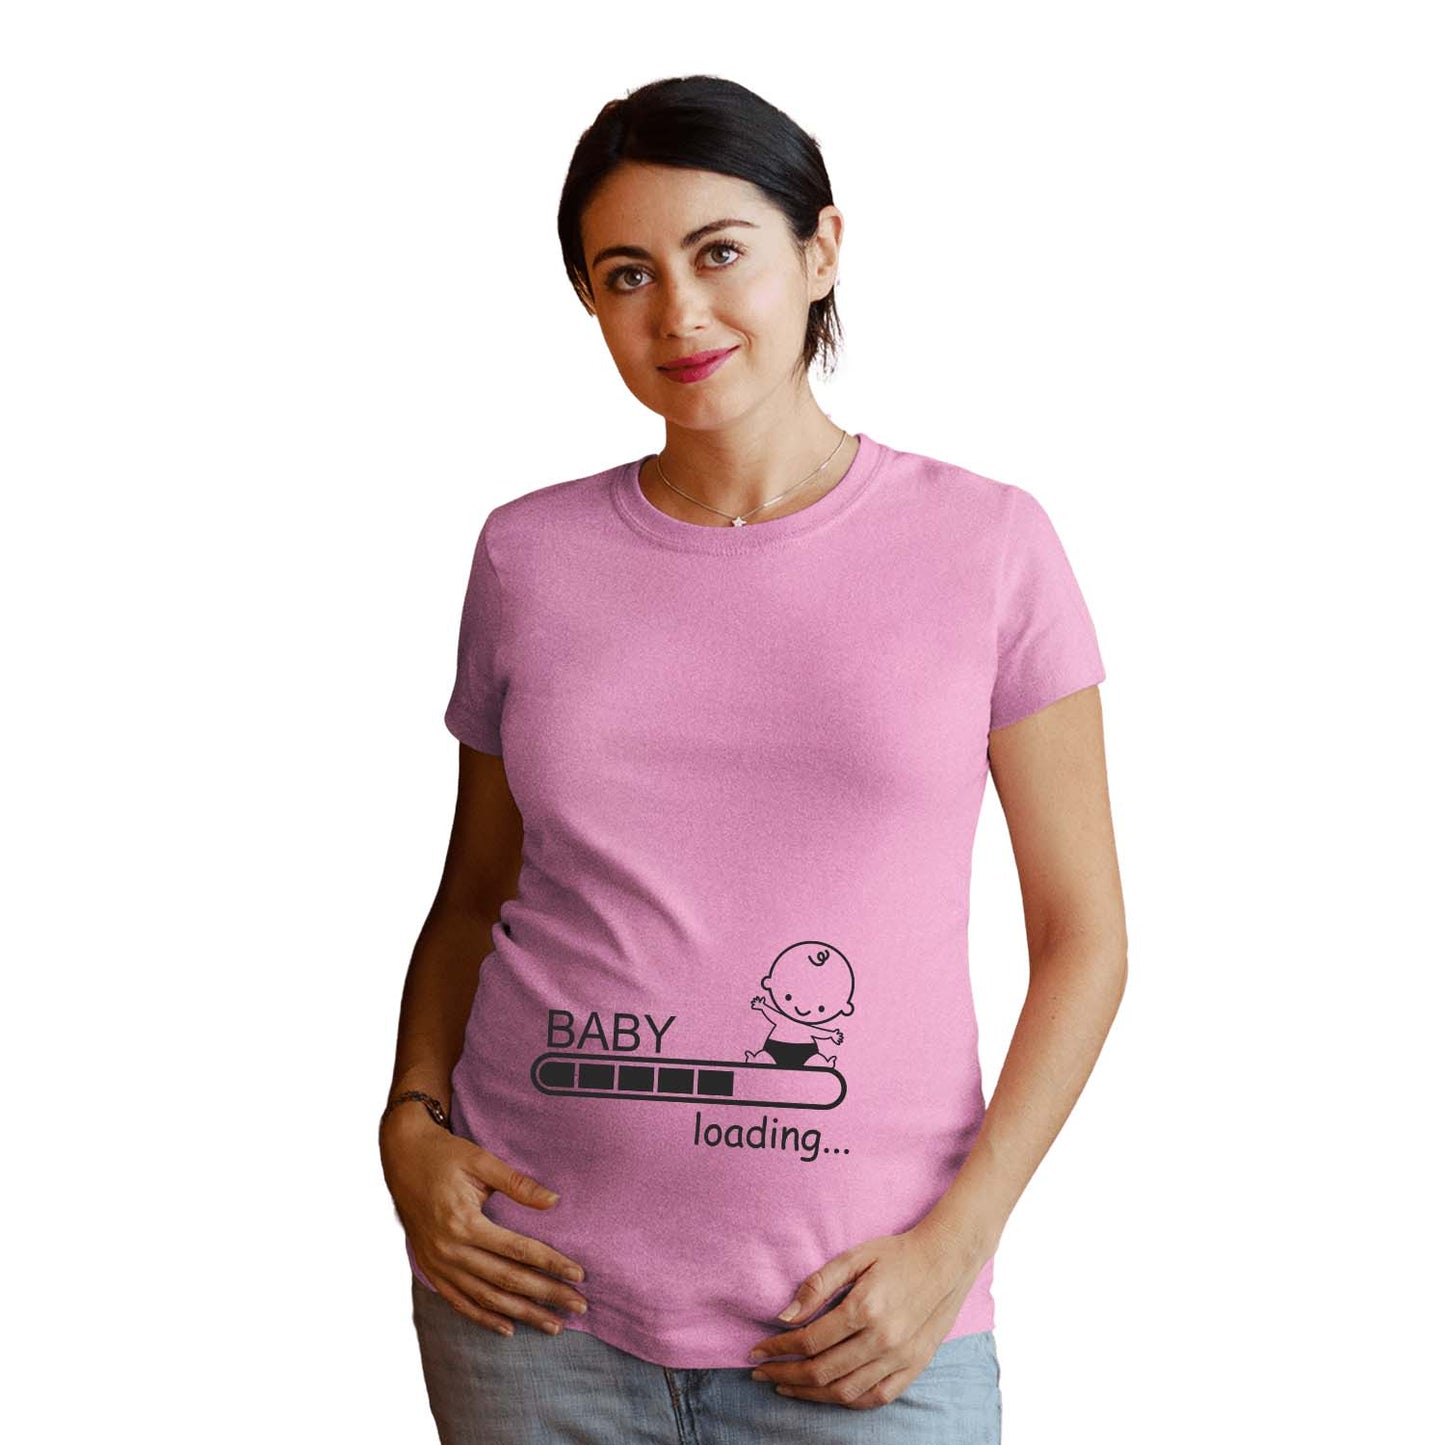 Baby Loading Please Wait Pregnancy Announcement T-Shirt